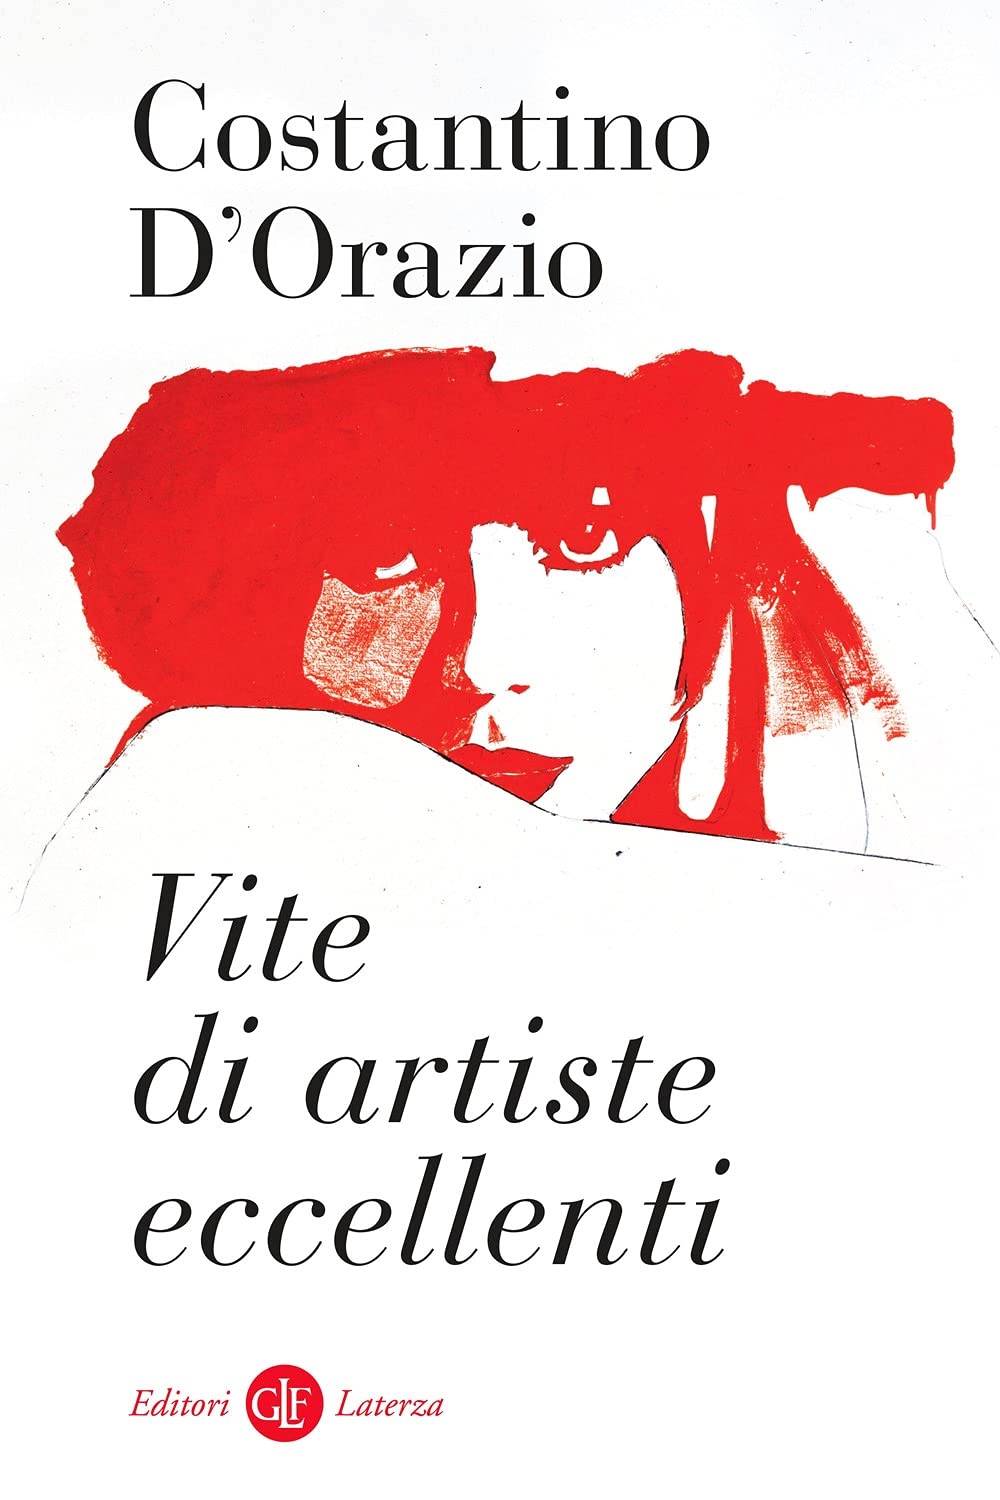 Costantino D'Orazio – Vite di artiste eccellenti (Laterza, Roma Bari 2021)